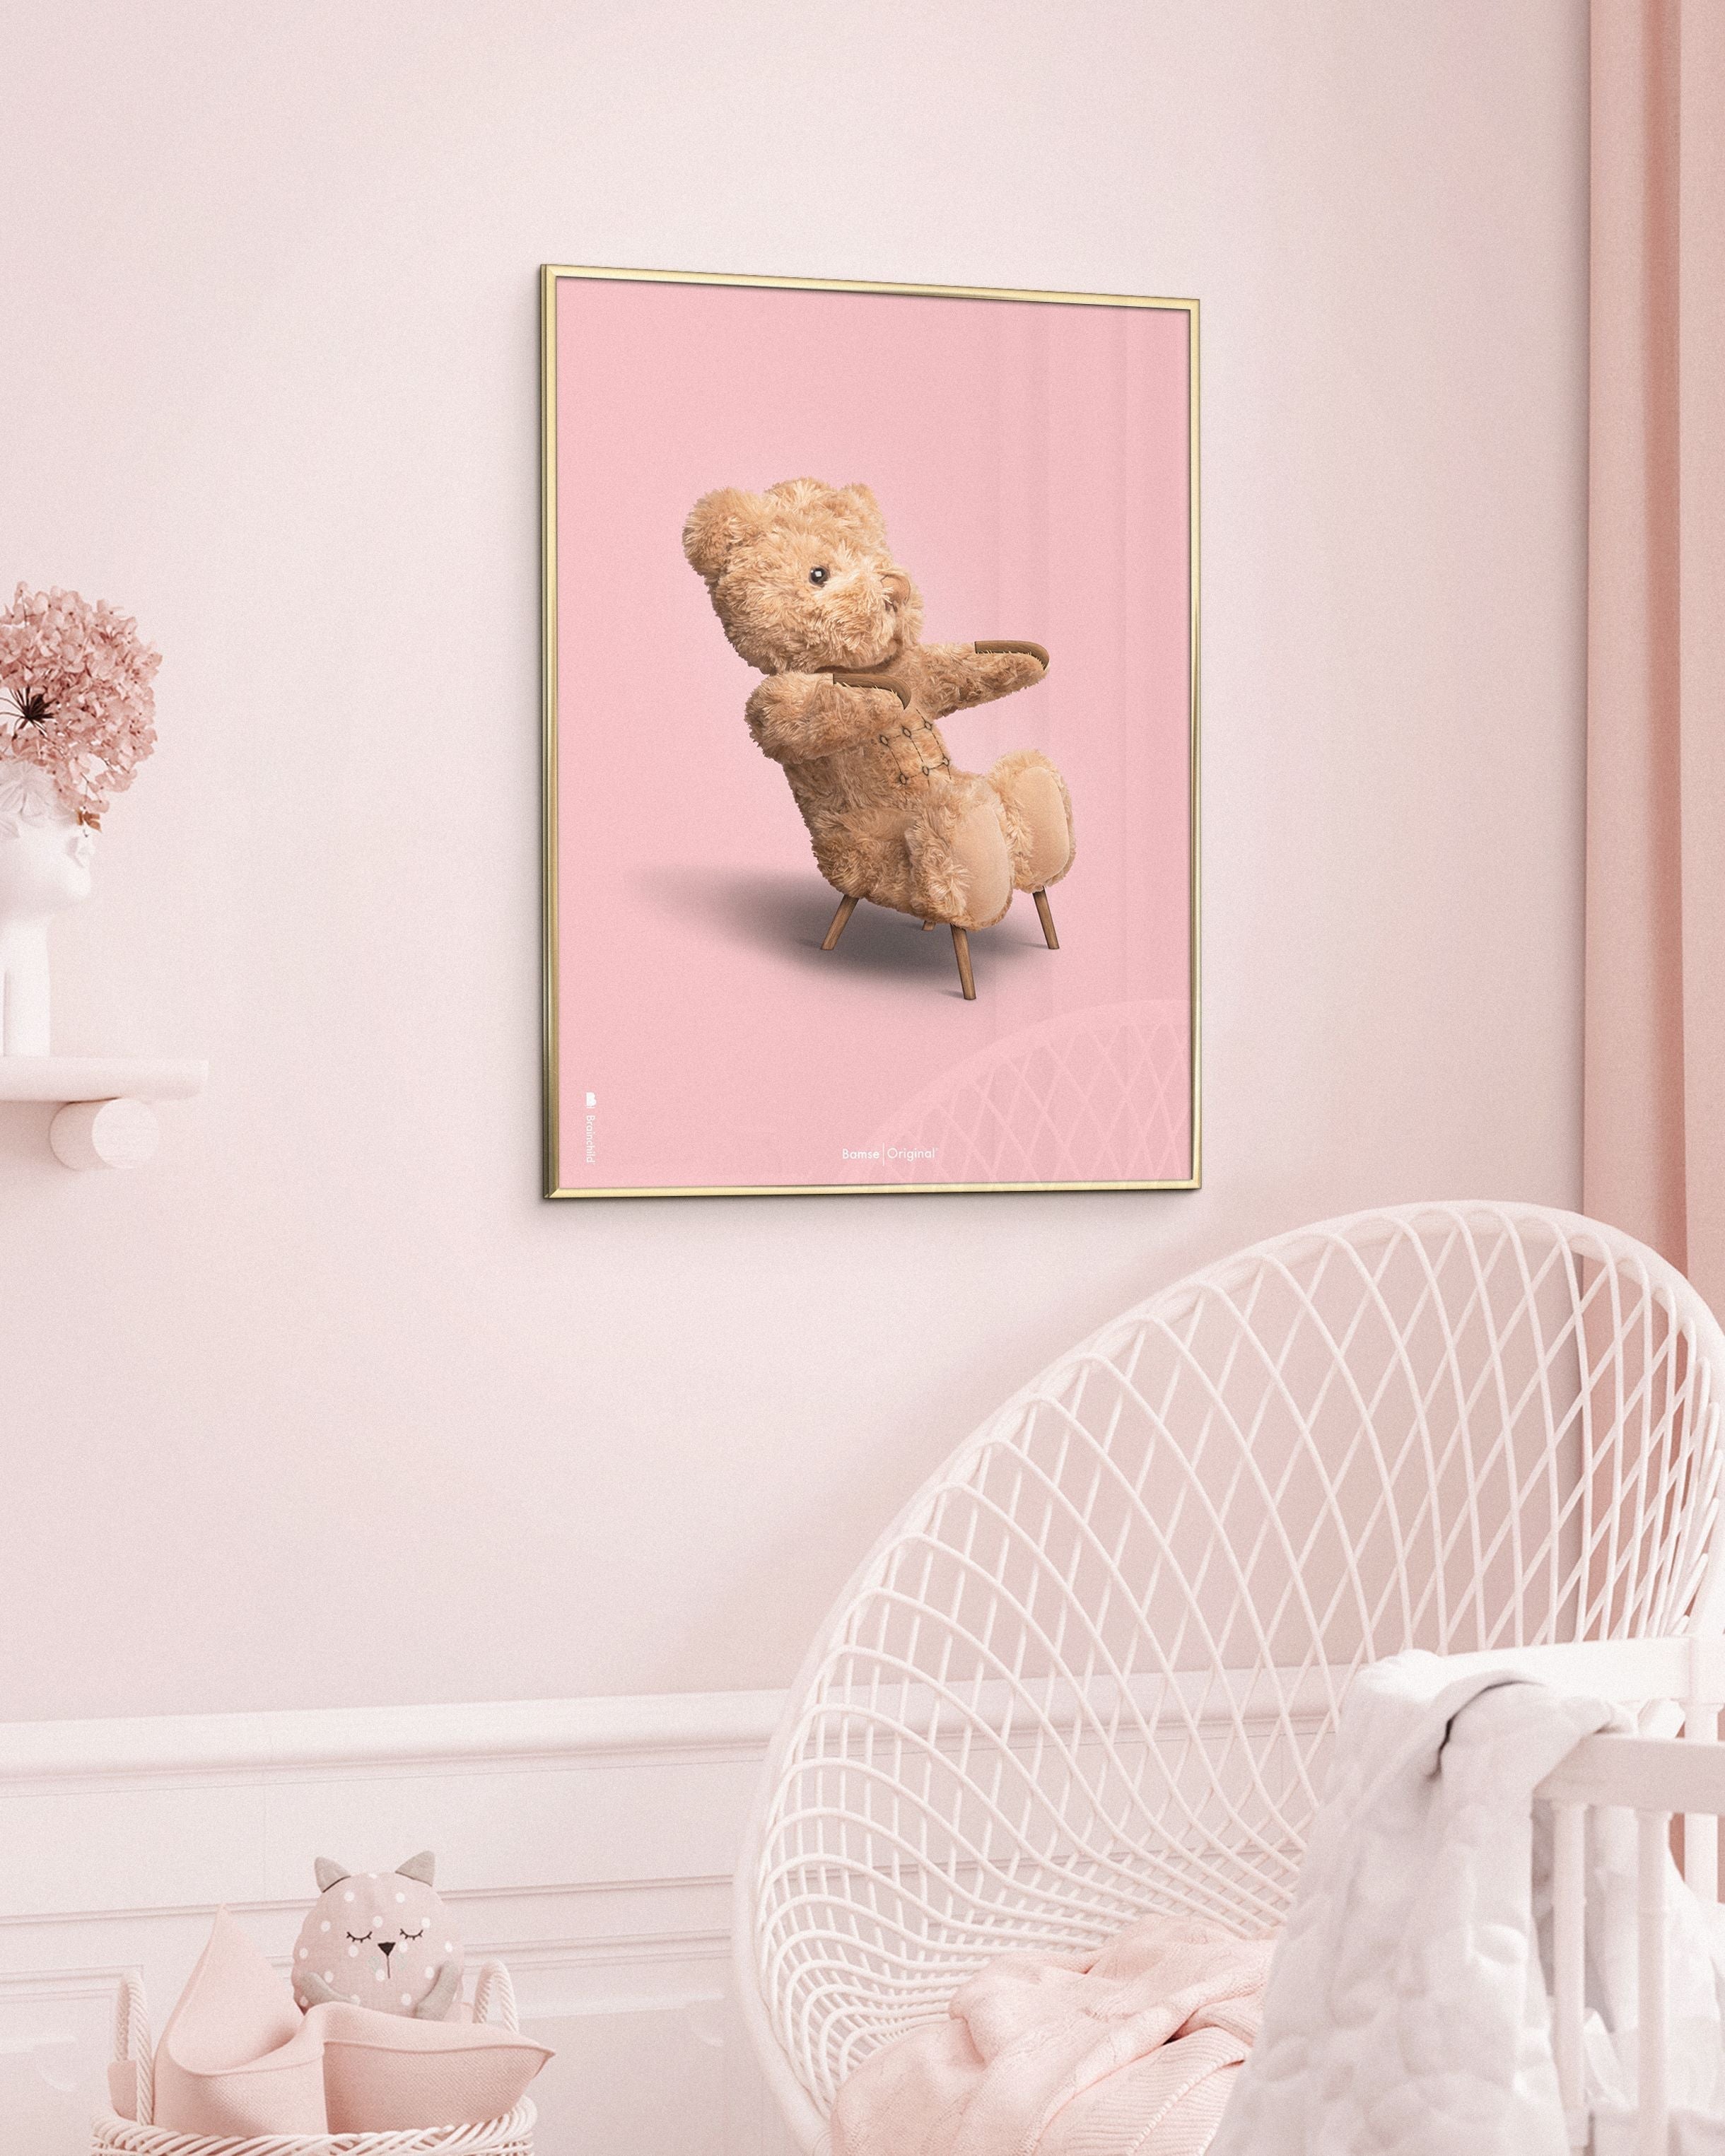 Marco de póster clásico de BrainChild Teddy Bear Hecho de madera clara Ramme 70x100 cm, fondo rosa